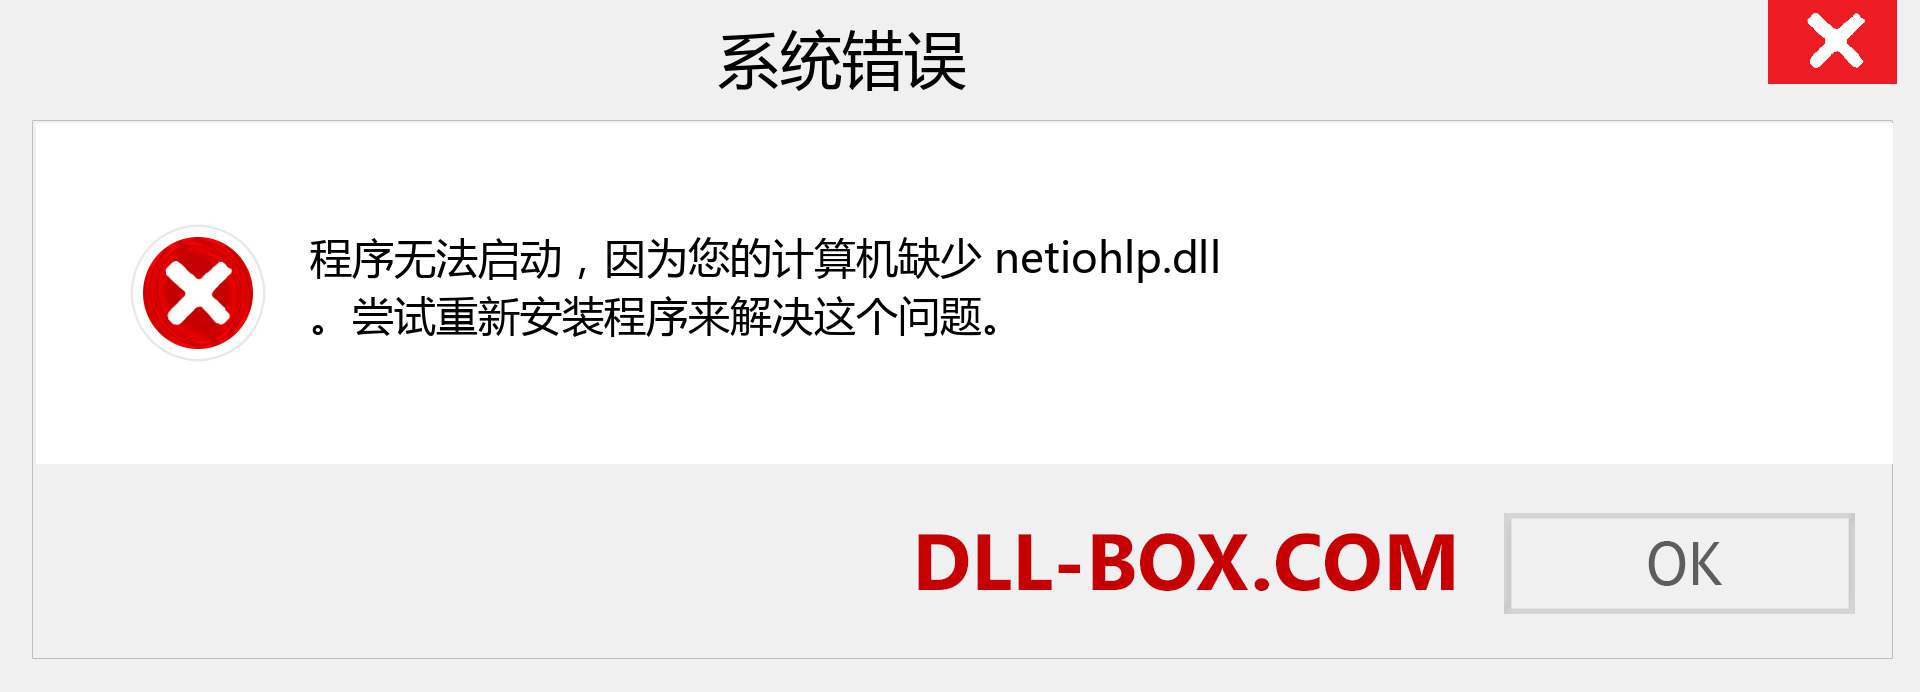 netiohlp.dll 文件丢失？。 适用于 Windows 7、8、10 的下载 - 修复 Windows、照片、图像上的 netiohlp dll 丢失错误